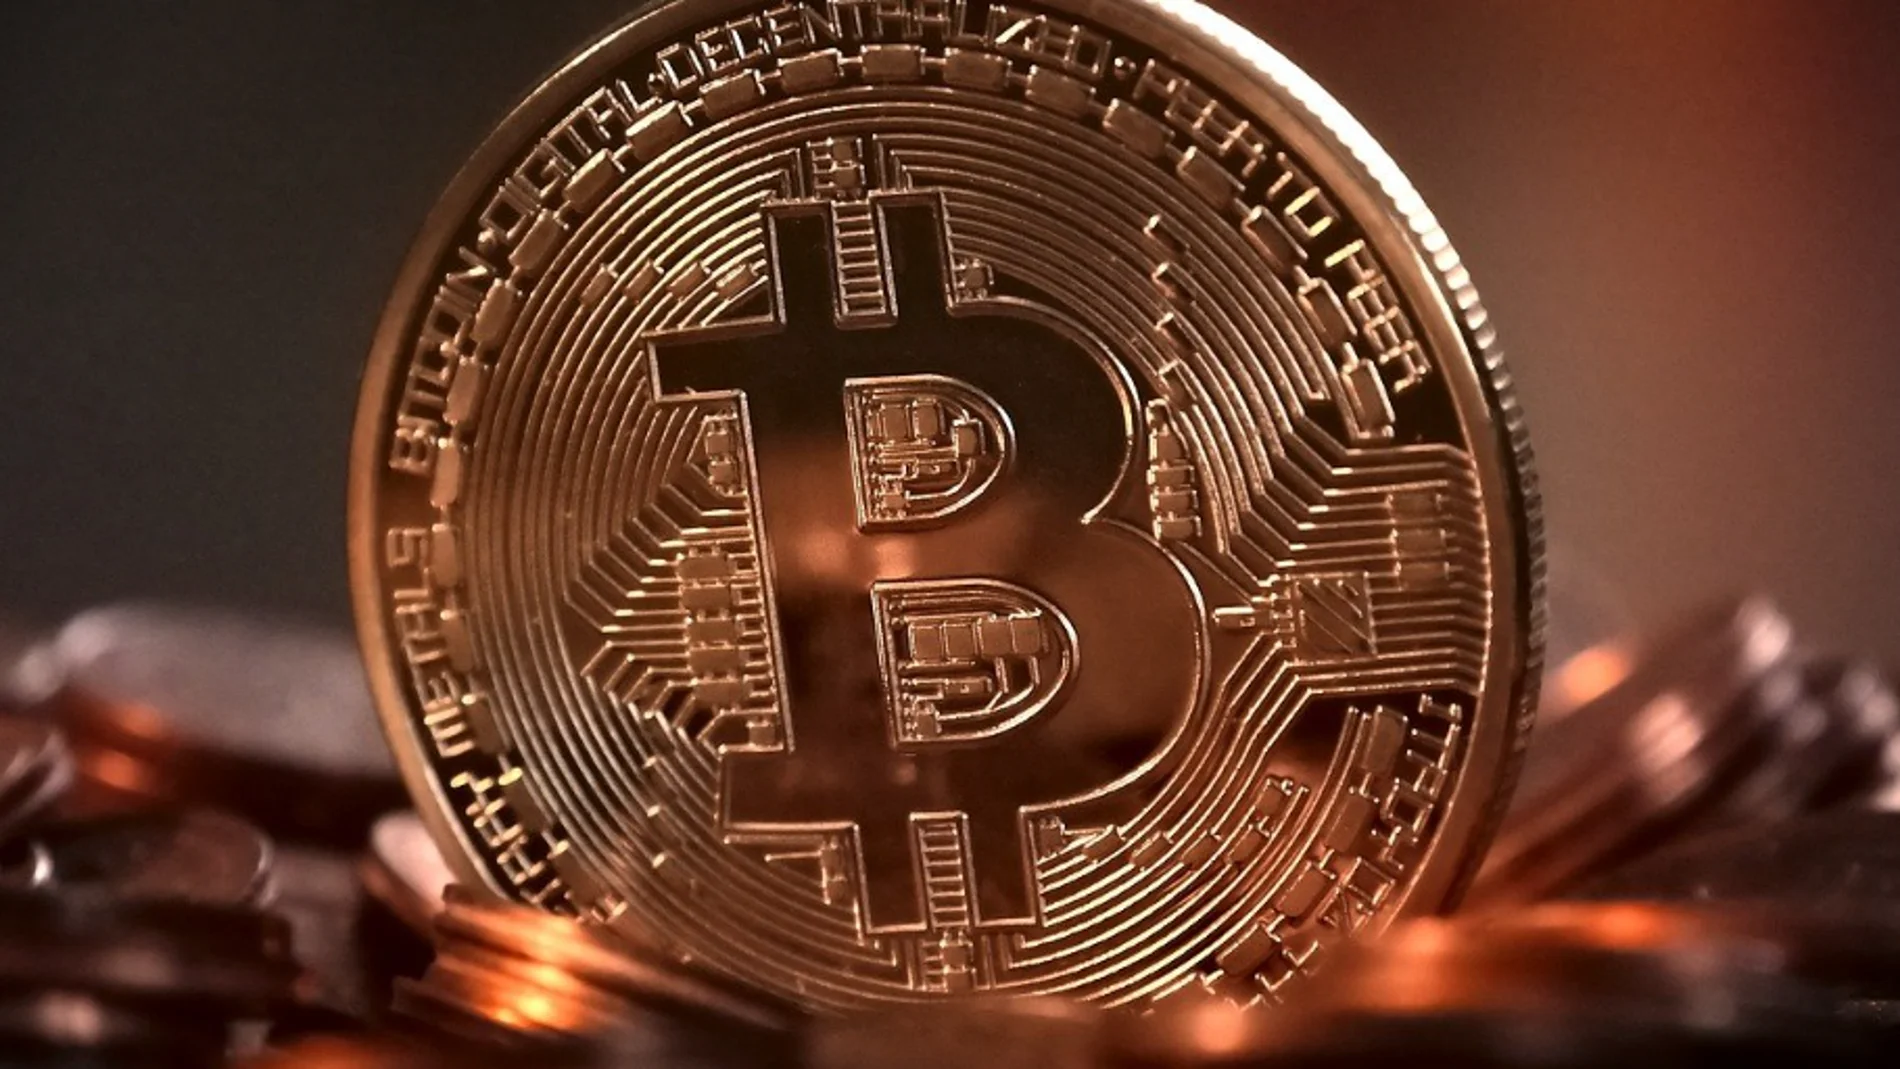 Criptomonedas: Del valor oro al bitcoin, ¿una nueva era económica?